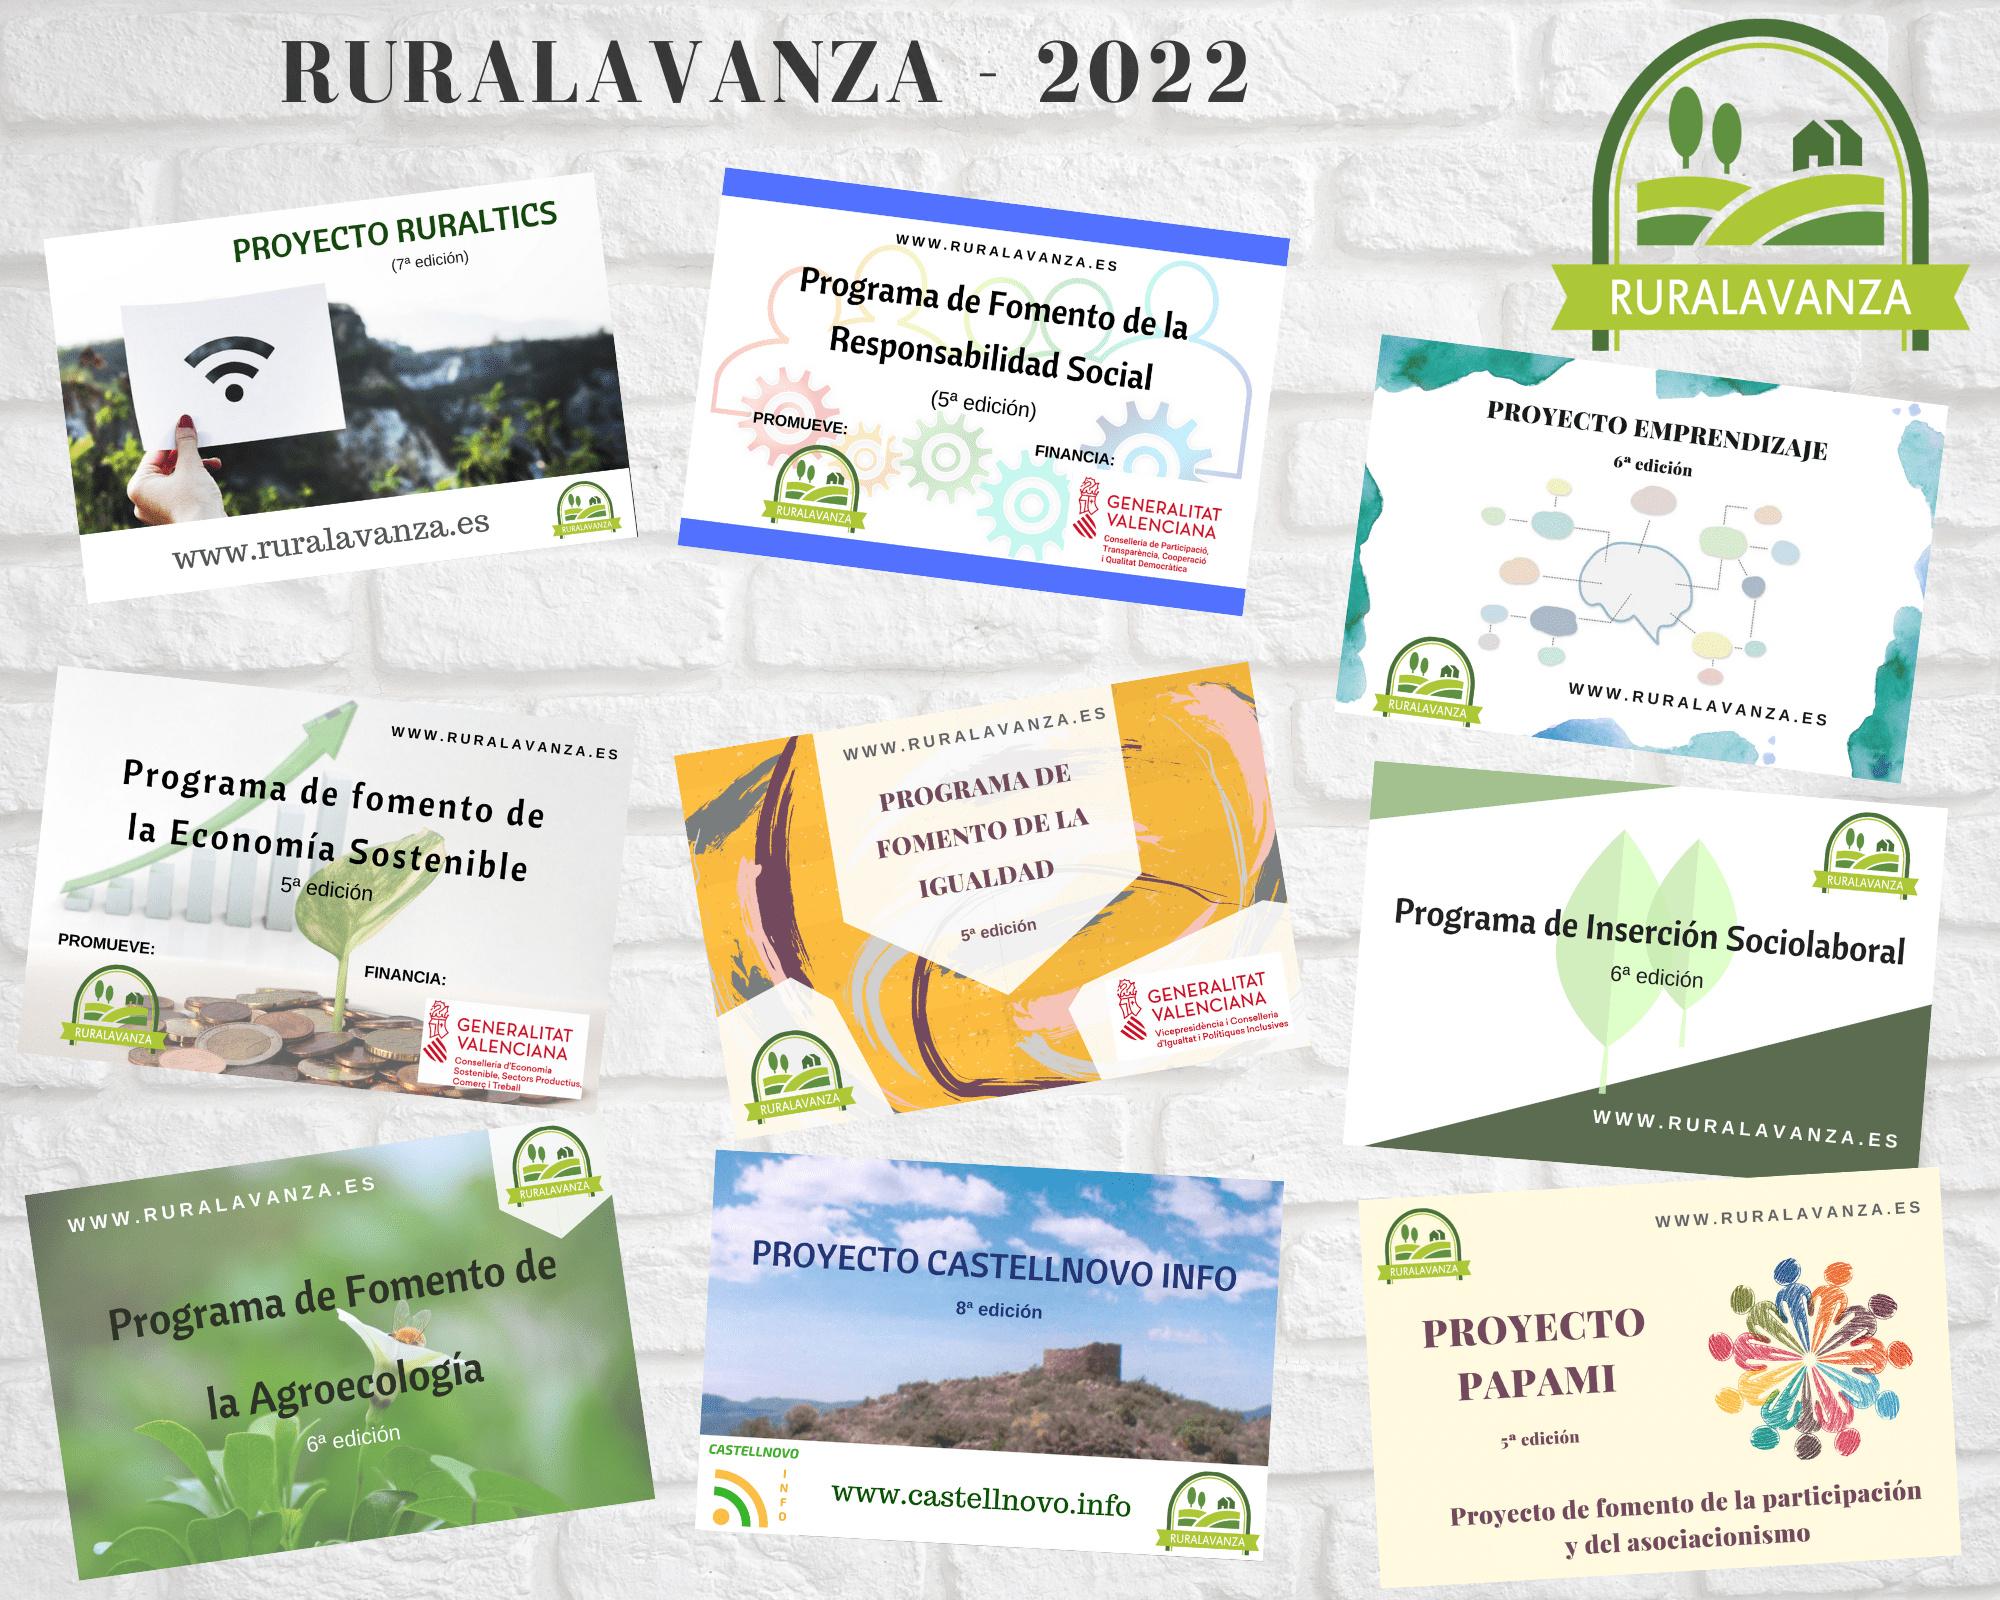 2022 Ruralavanza total proyectos